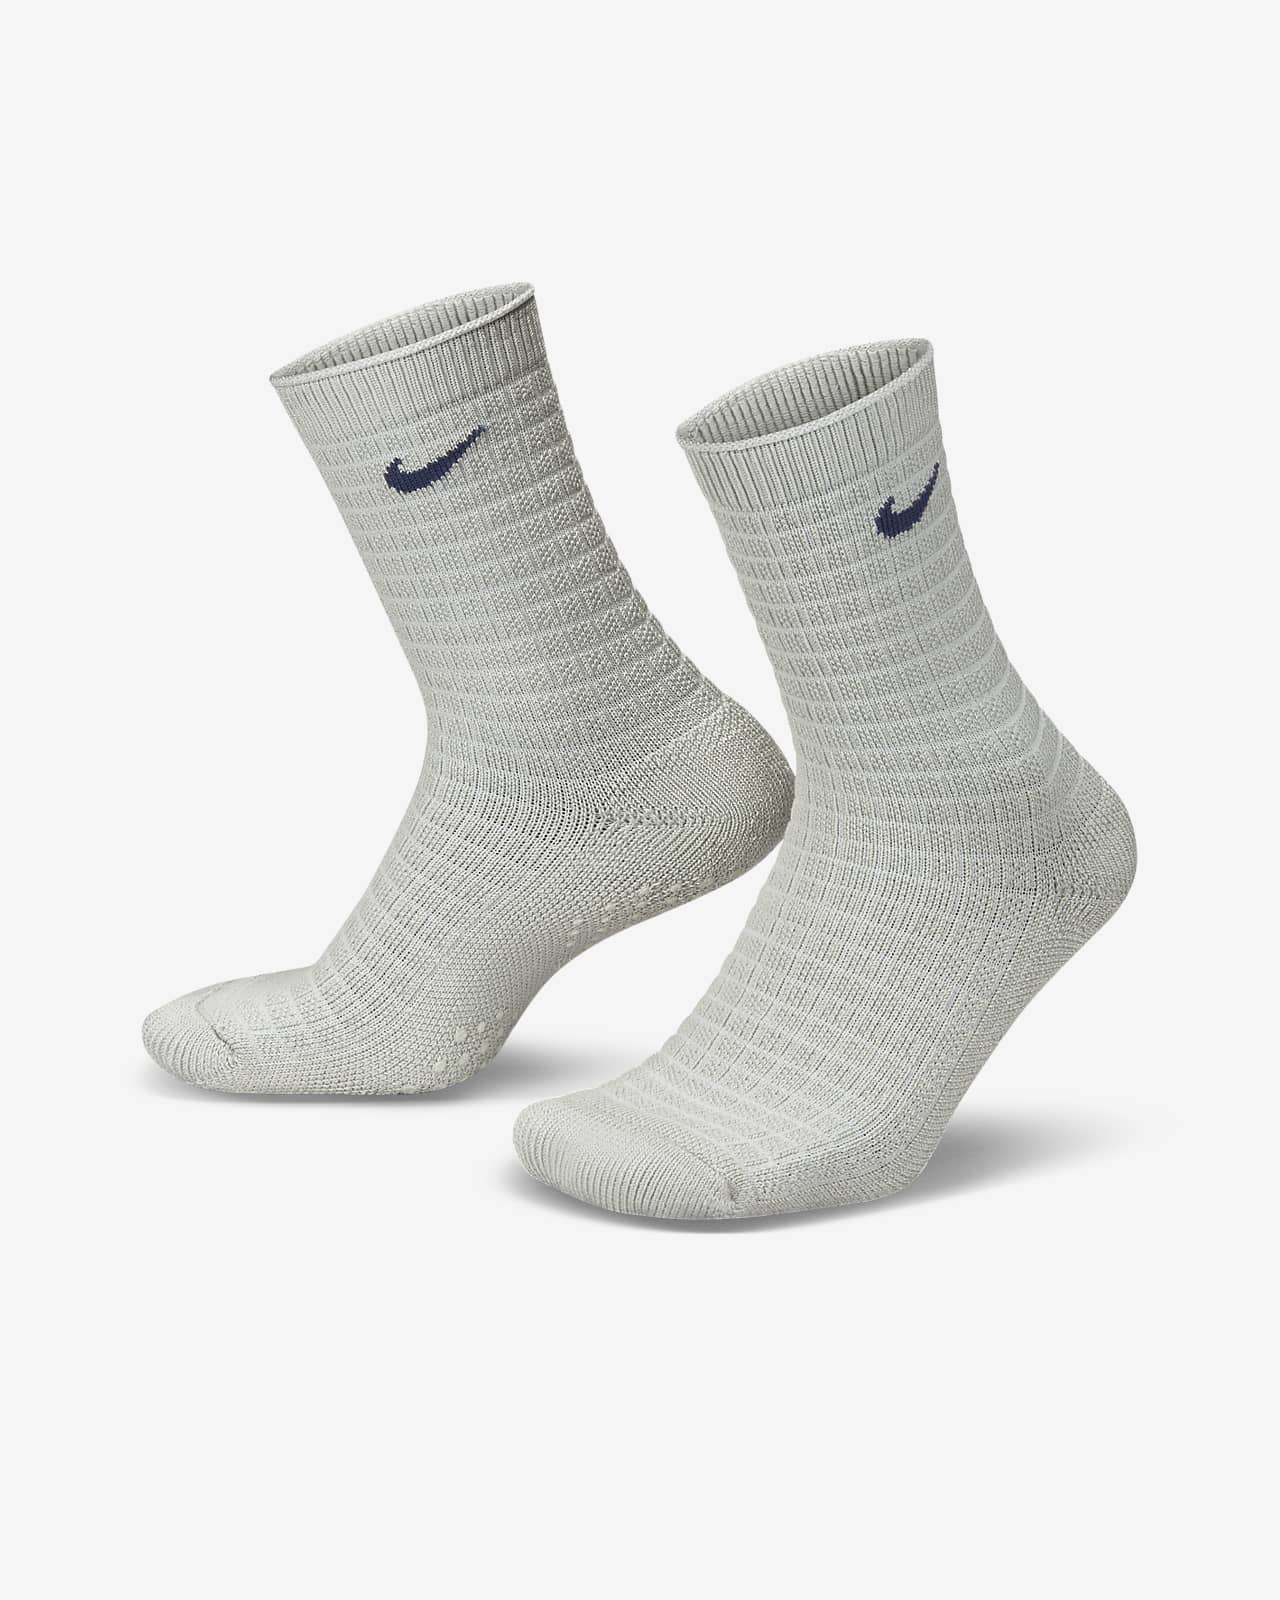 Nike Grip SOS Ankle Racing Socks